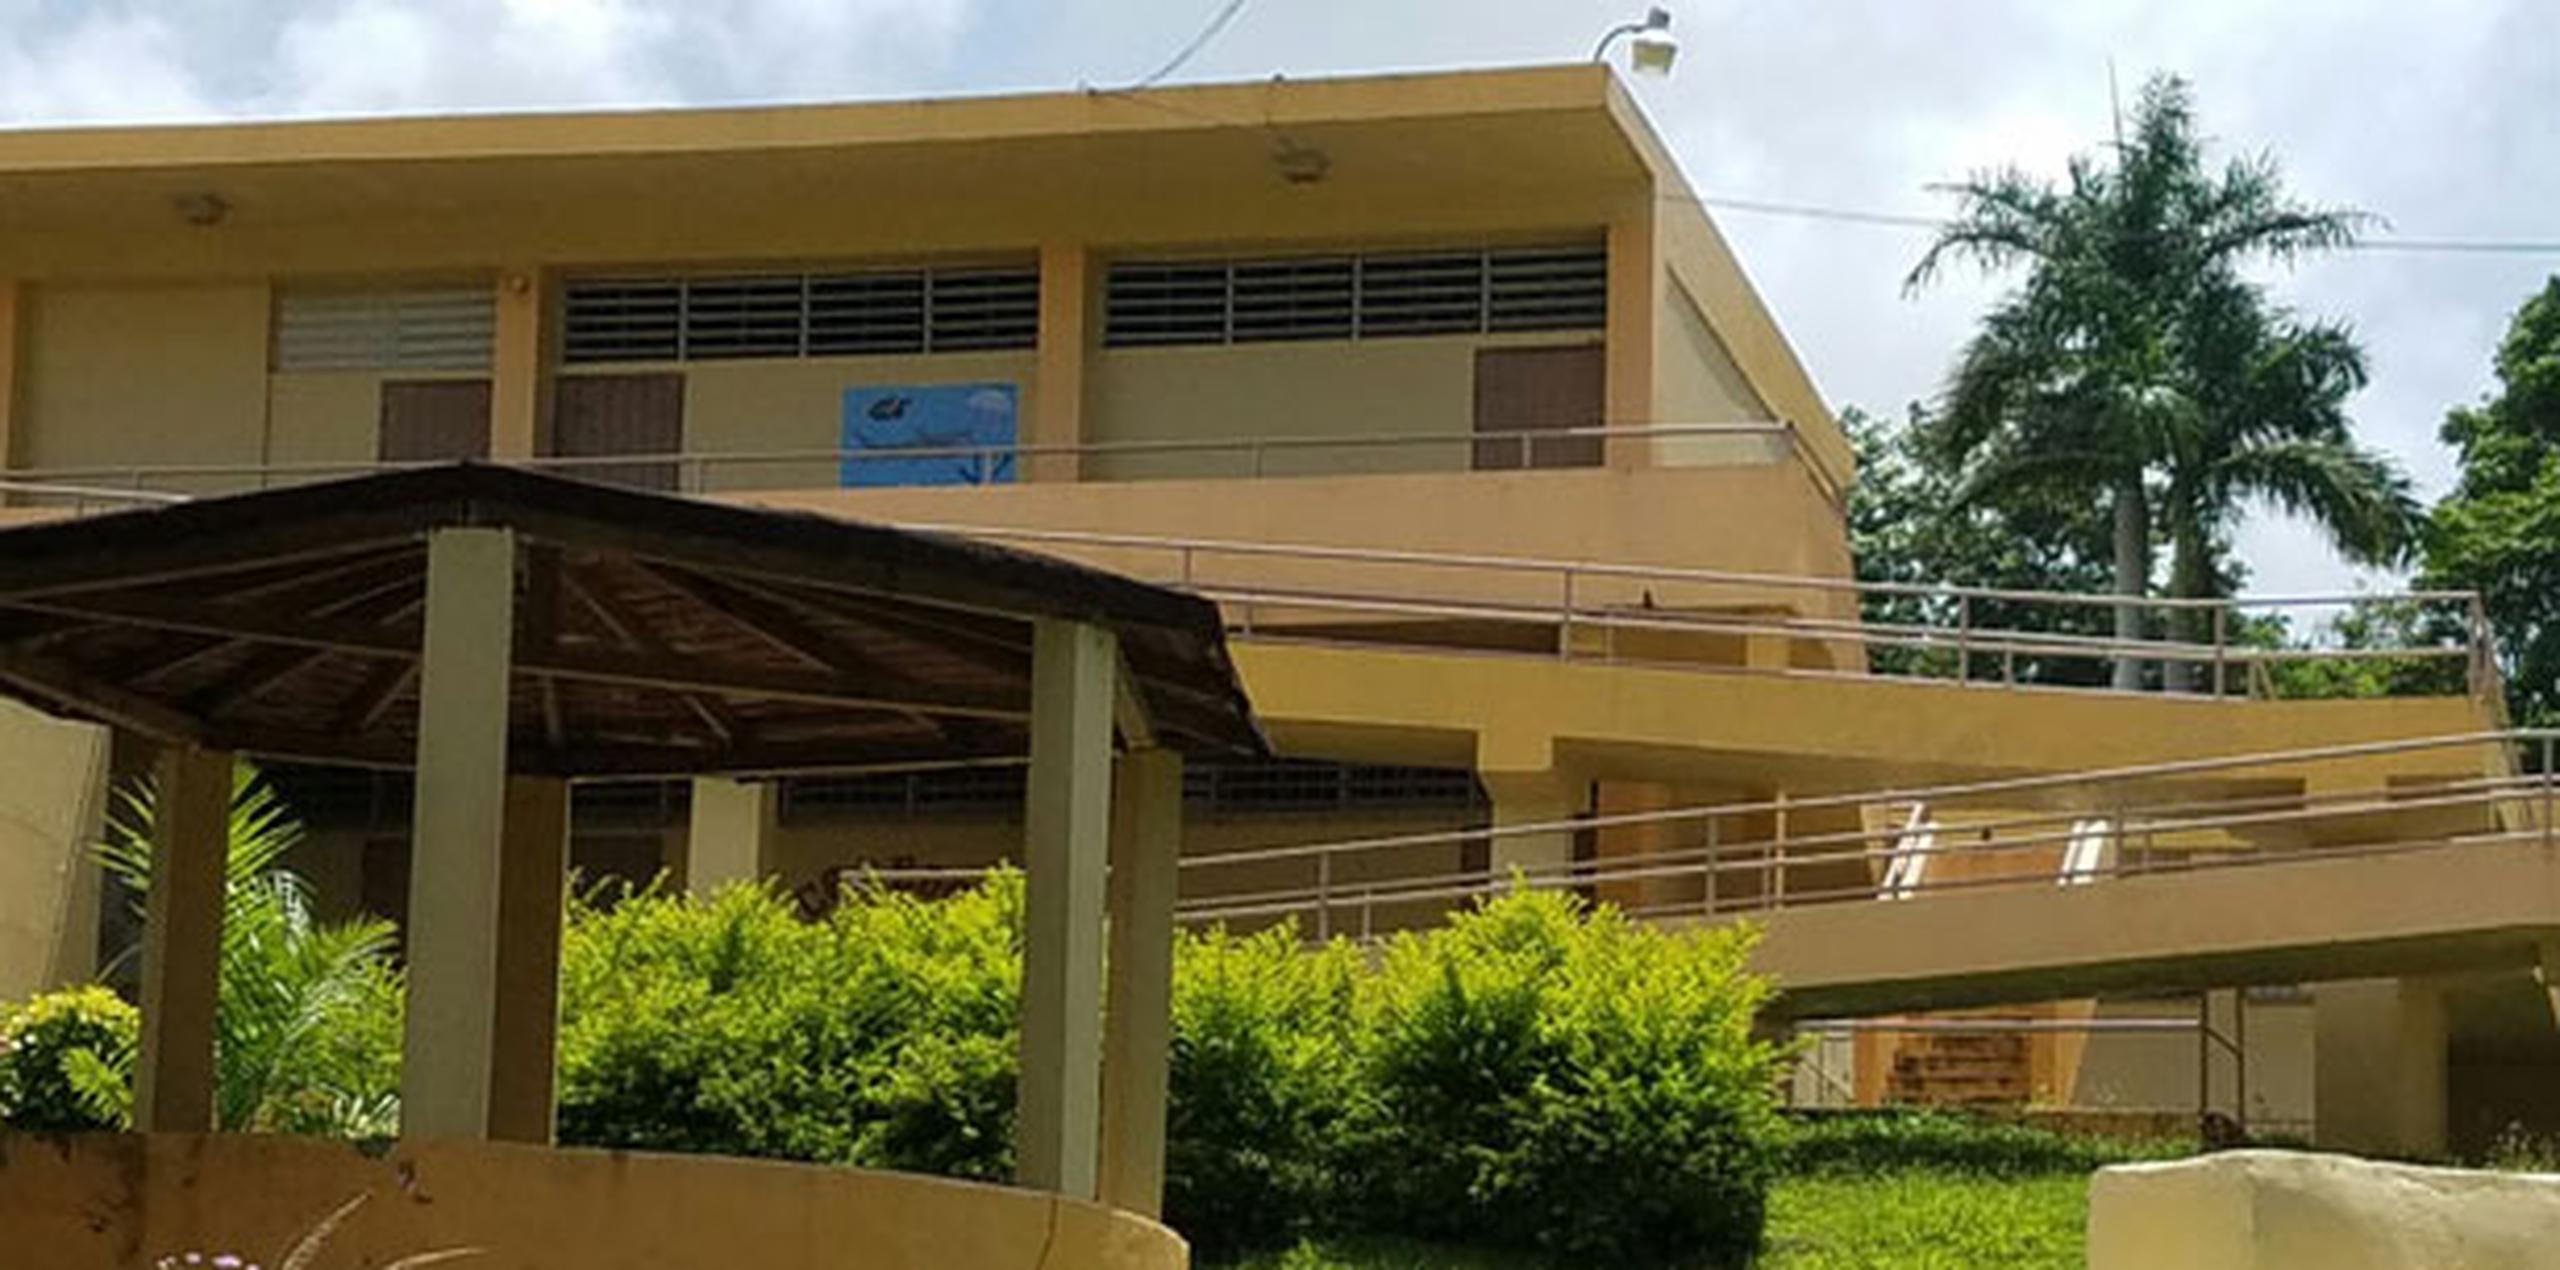 Entre los planteles que cesarán funciones debido a la baja matrícula está la escuela intermedia  Lola Millán Orellano, de Río Grande, en la que para el próximo semestre solo se habían inscrito 54 alumnos.